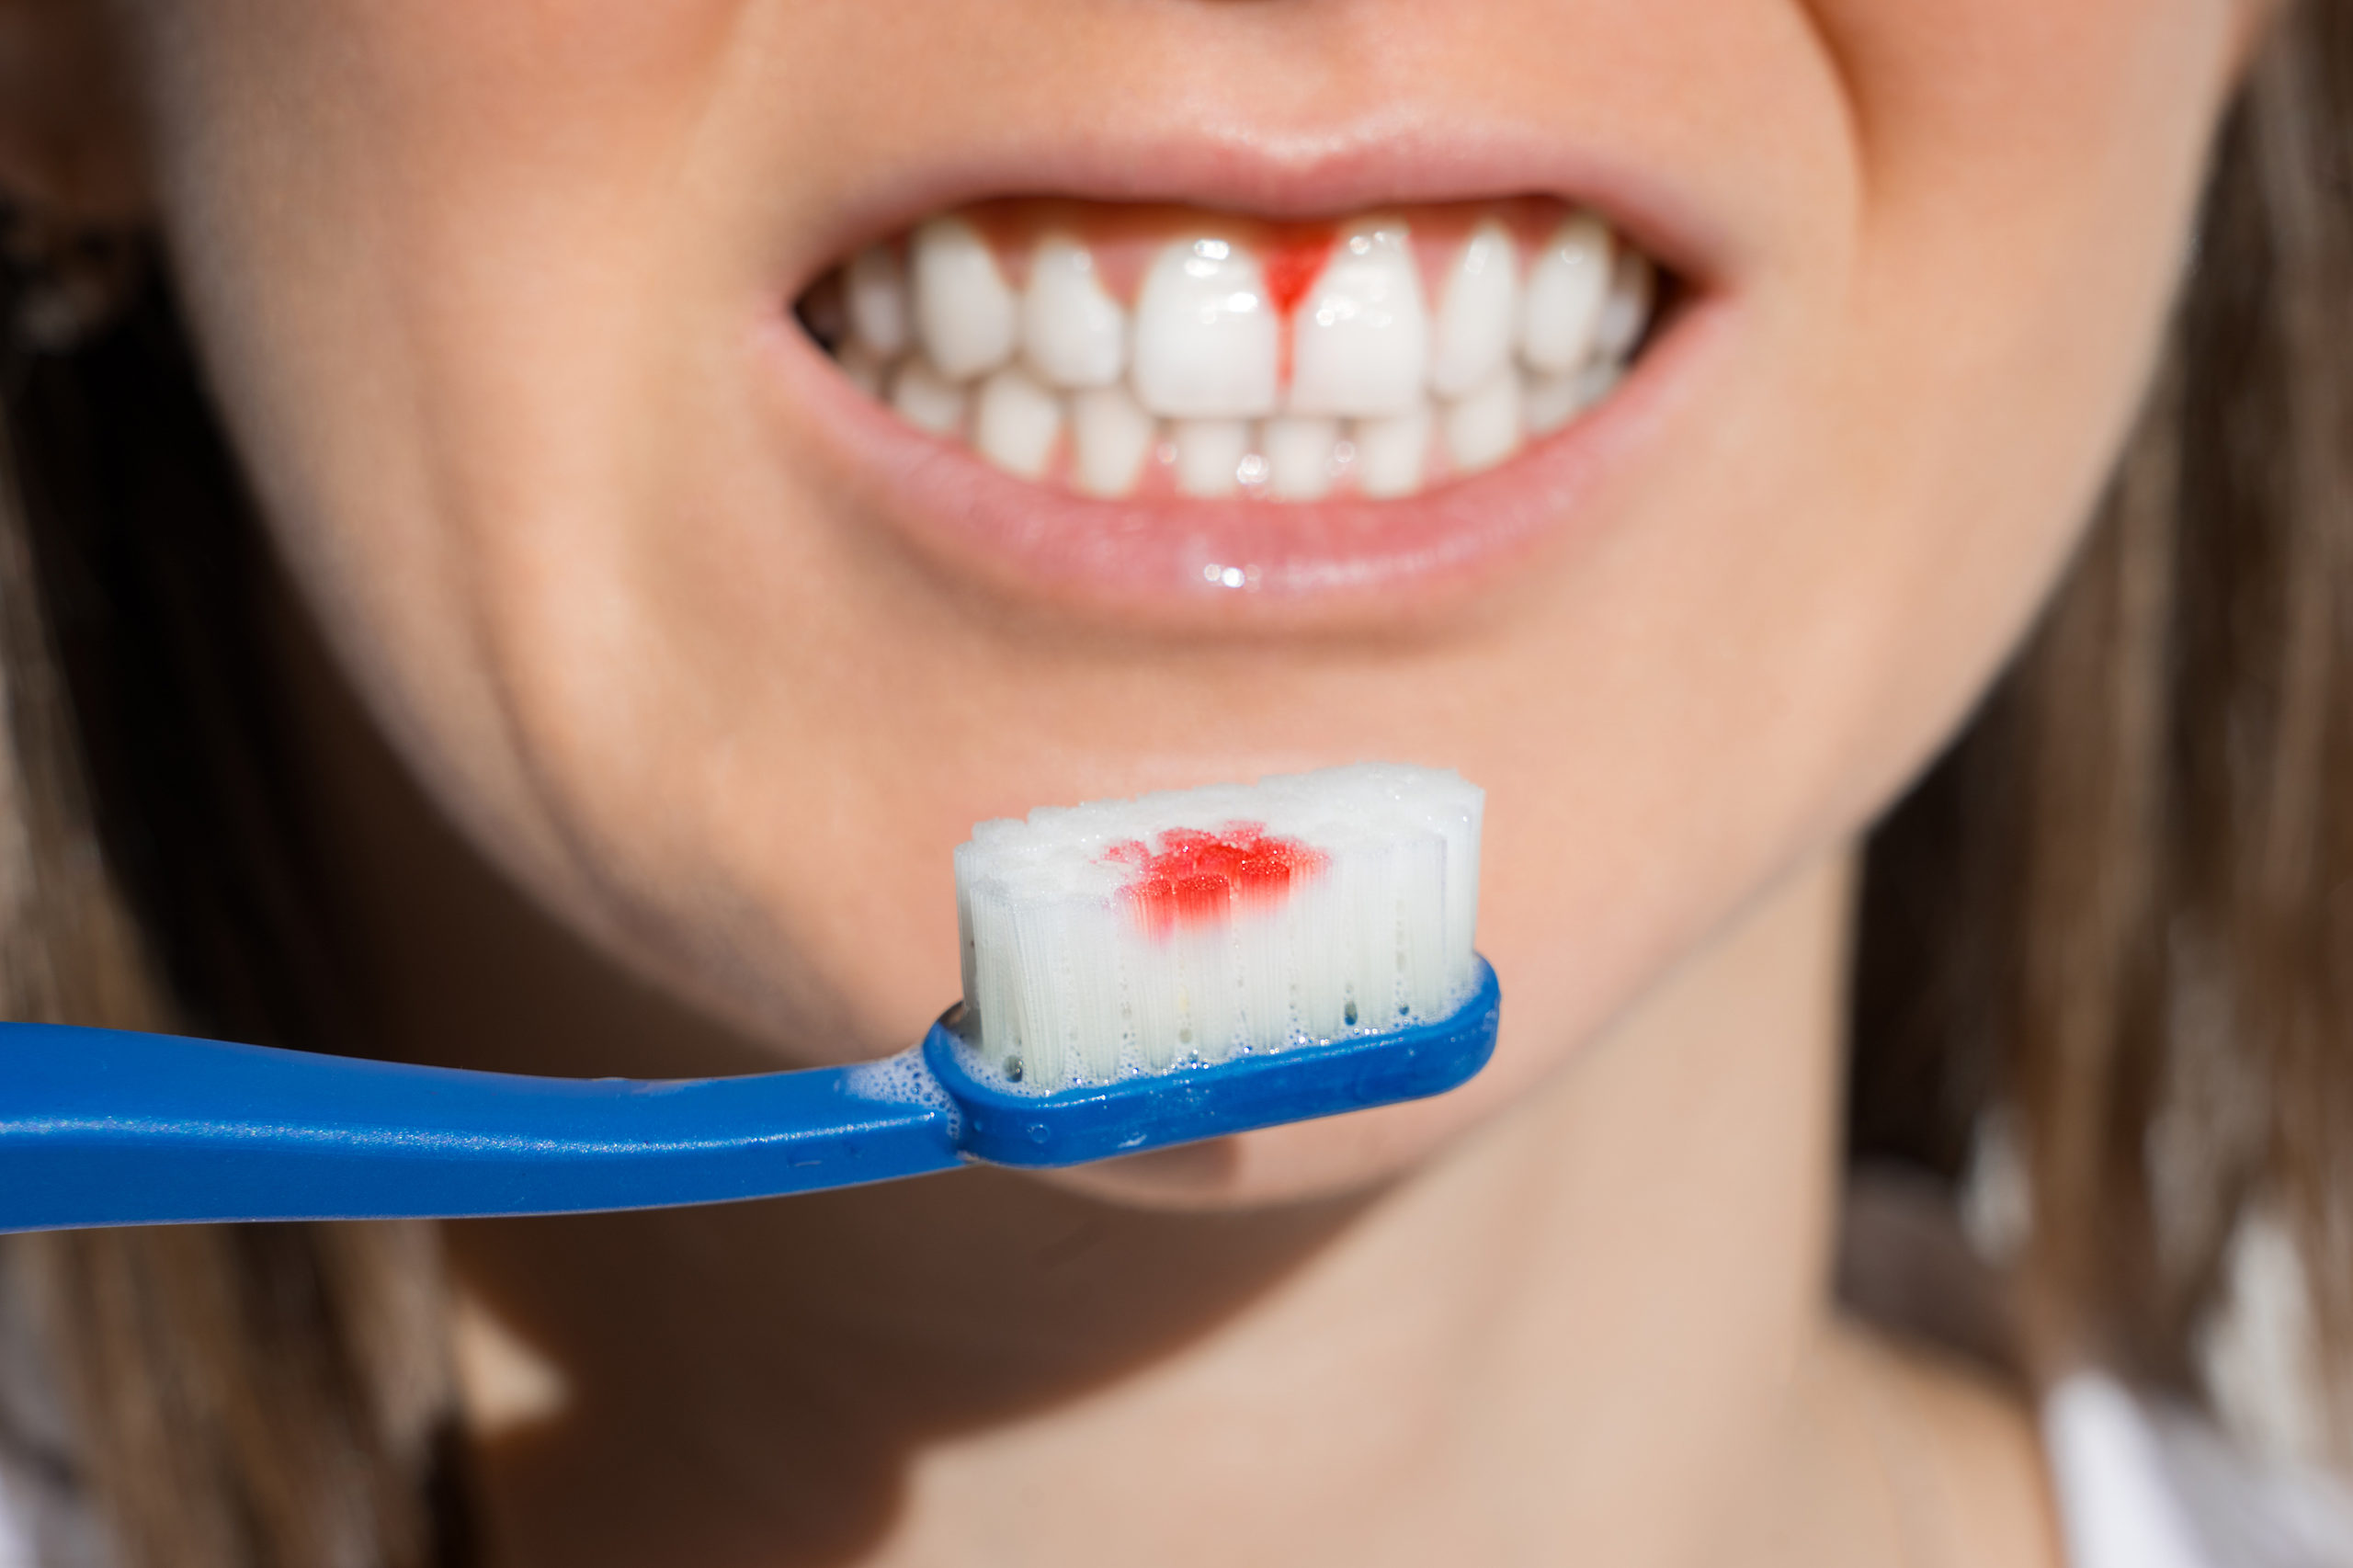 Đánh răng mạnh cũng khiến bị chảy máu chân răng